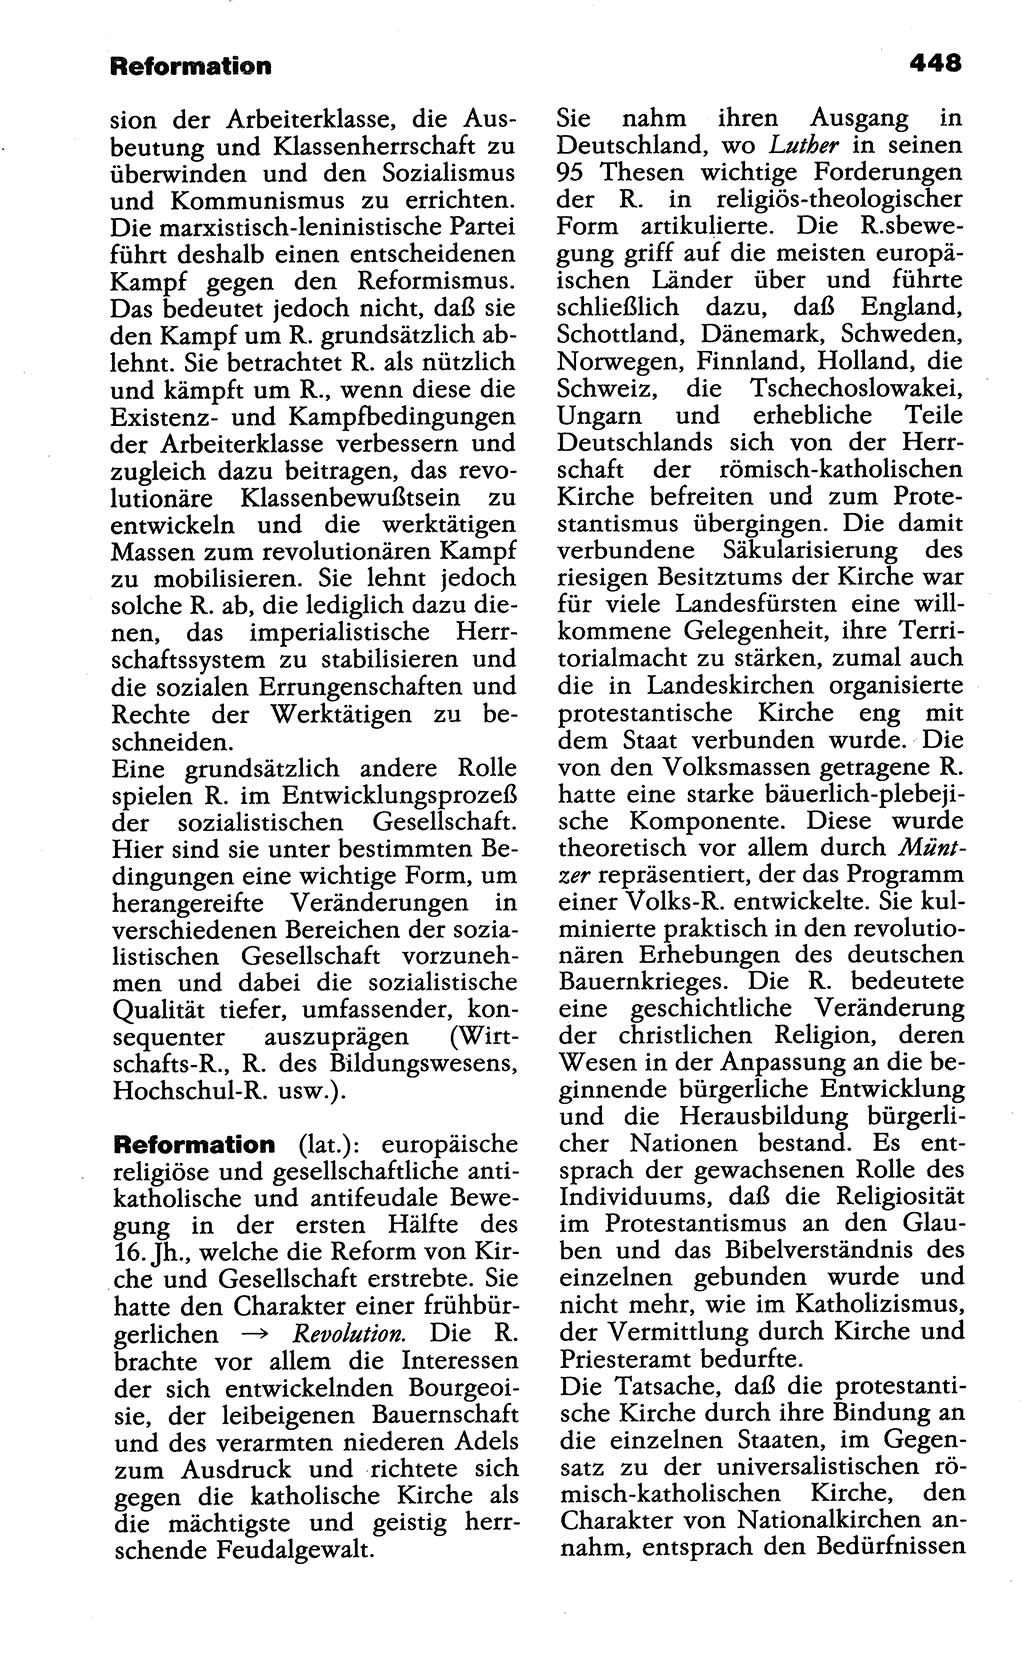 Wörterbuch der marxistisch-leninistischen Philosophie [Deutsche Demokratische Republik (DDR)] 1985, Seite 448 (Wb. ML Phil. DDR 1985, S. 448)